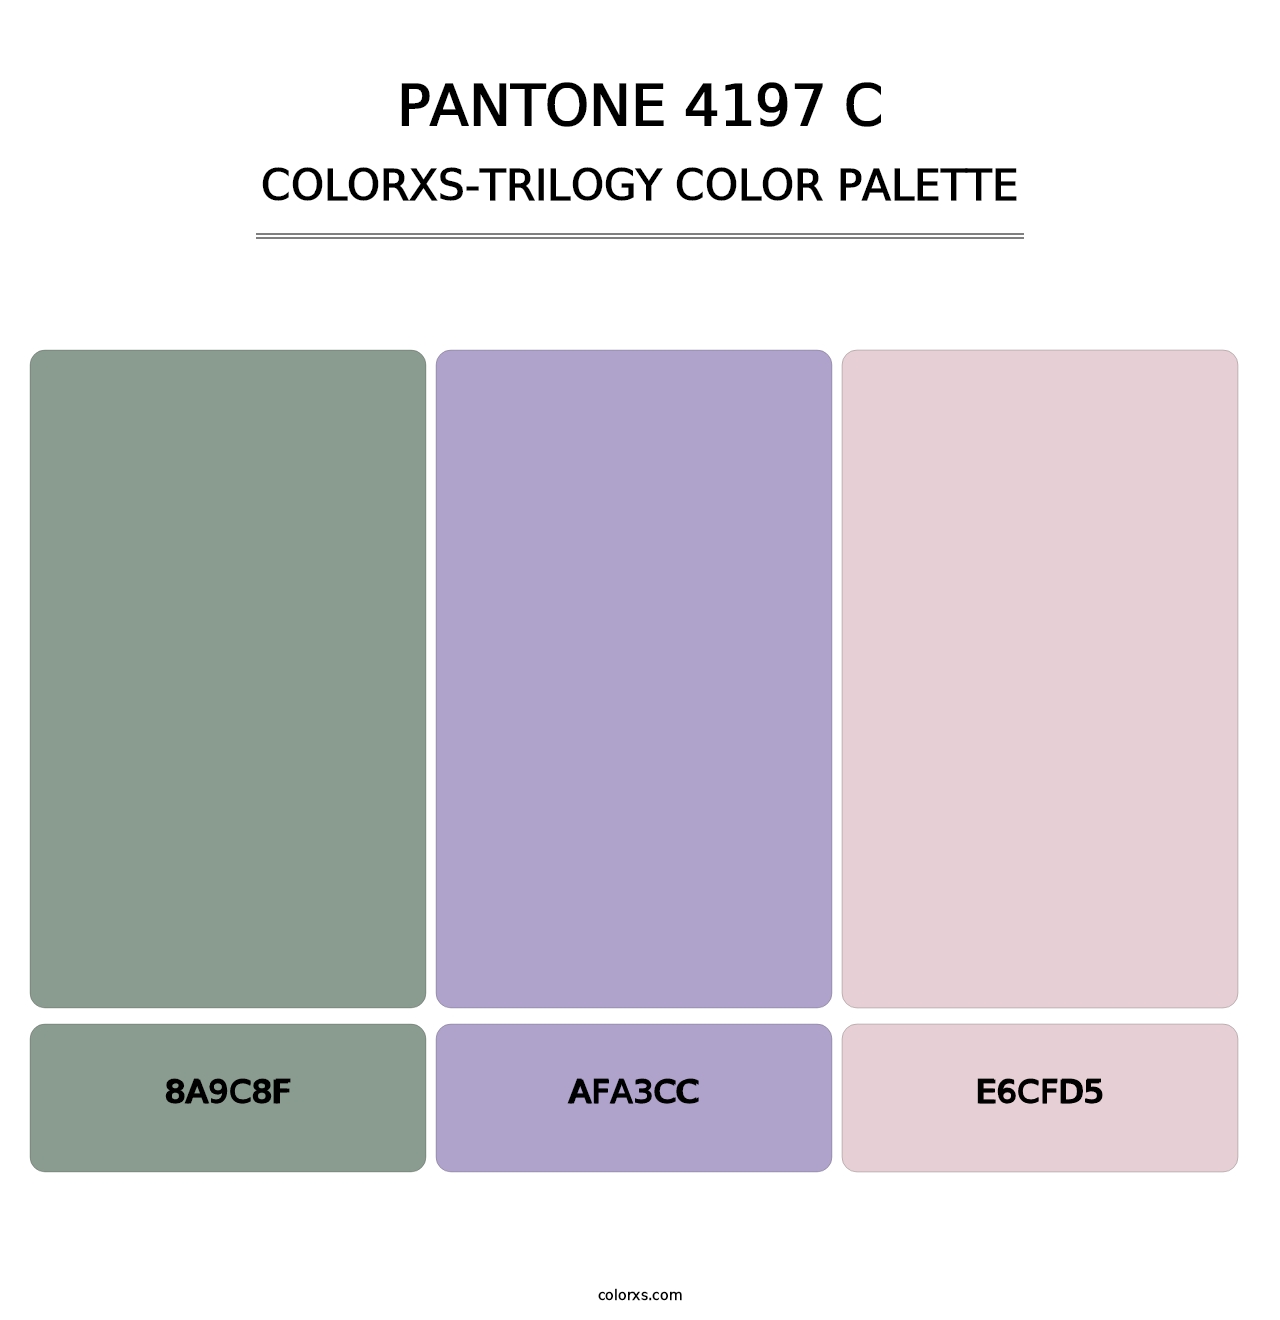 PANTONE 4197 C - Colorxs Trilogy Palette